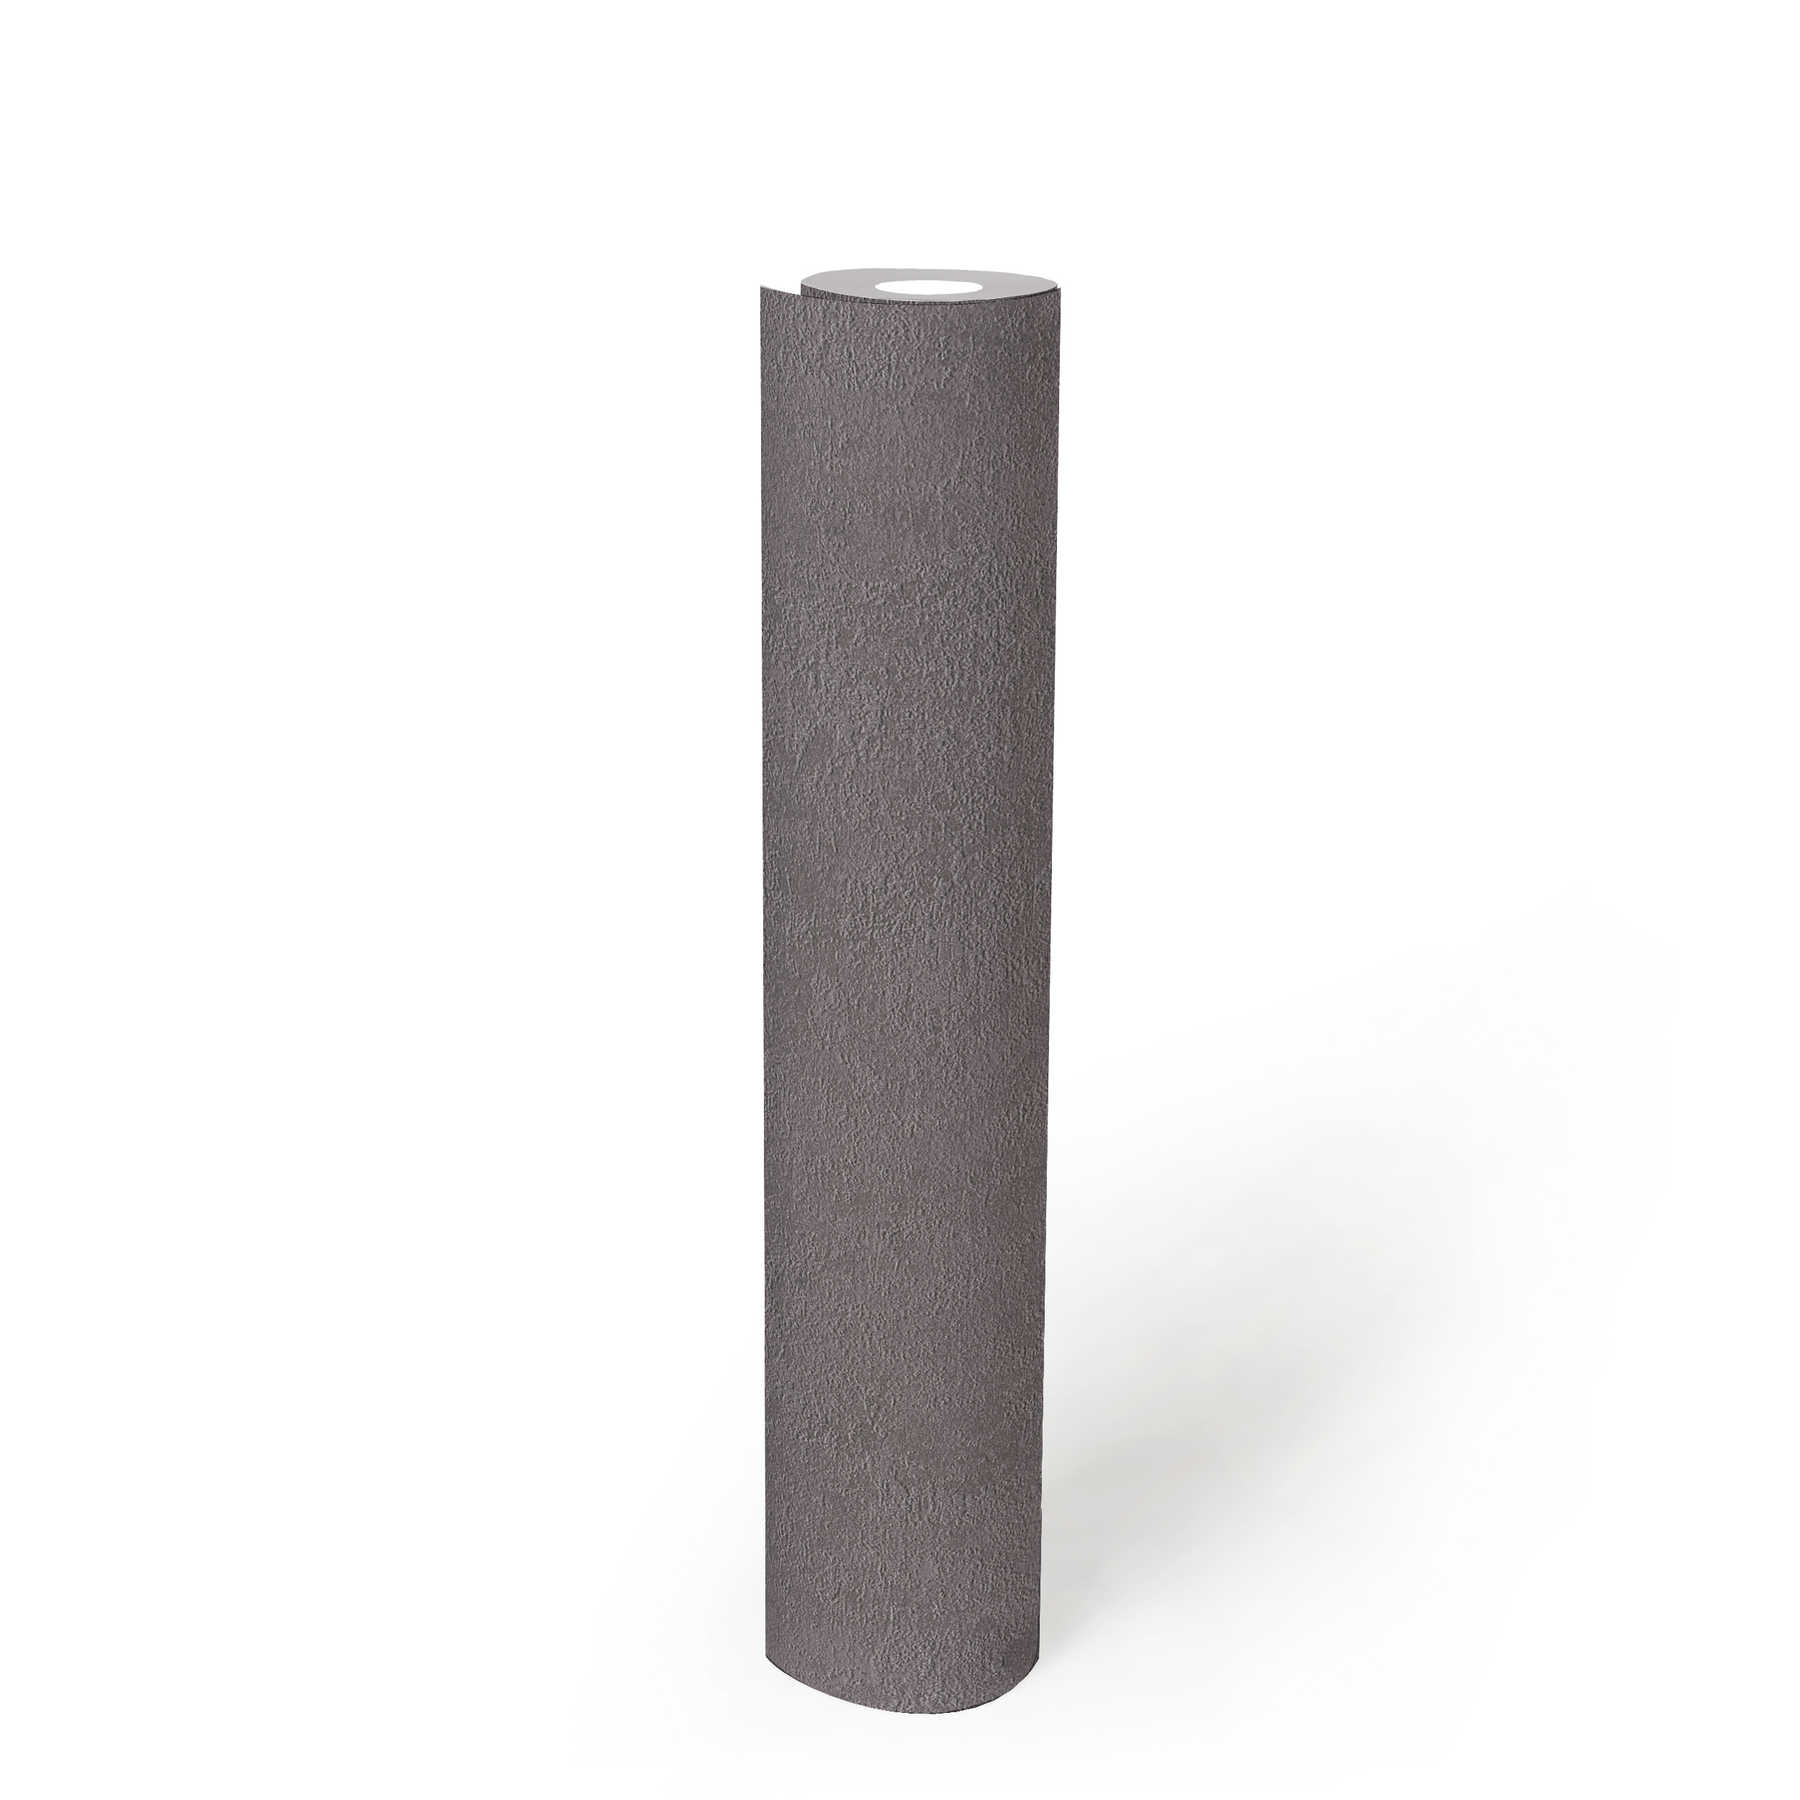             papel pintado estructura de yeso, liso y satinado - gris oscuro
        